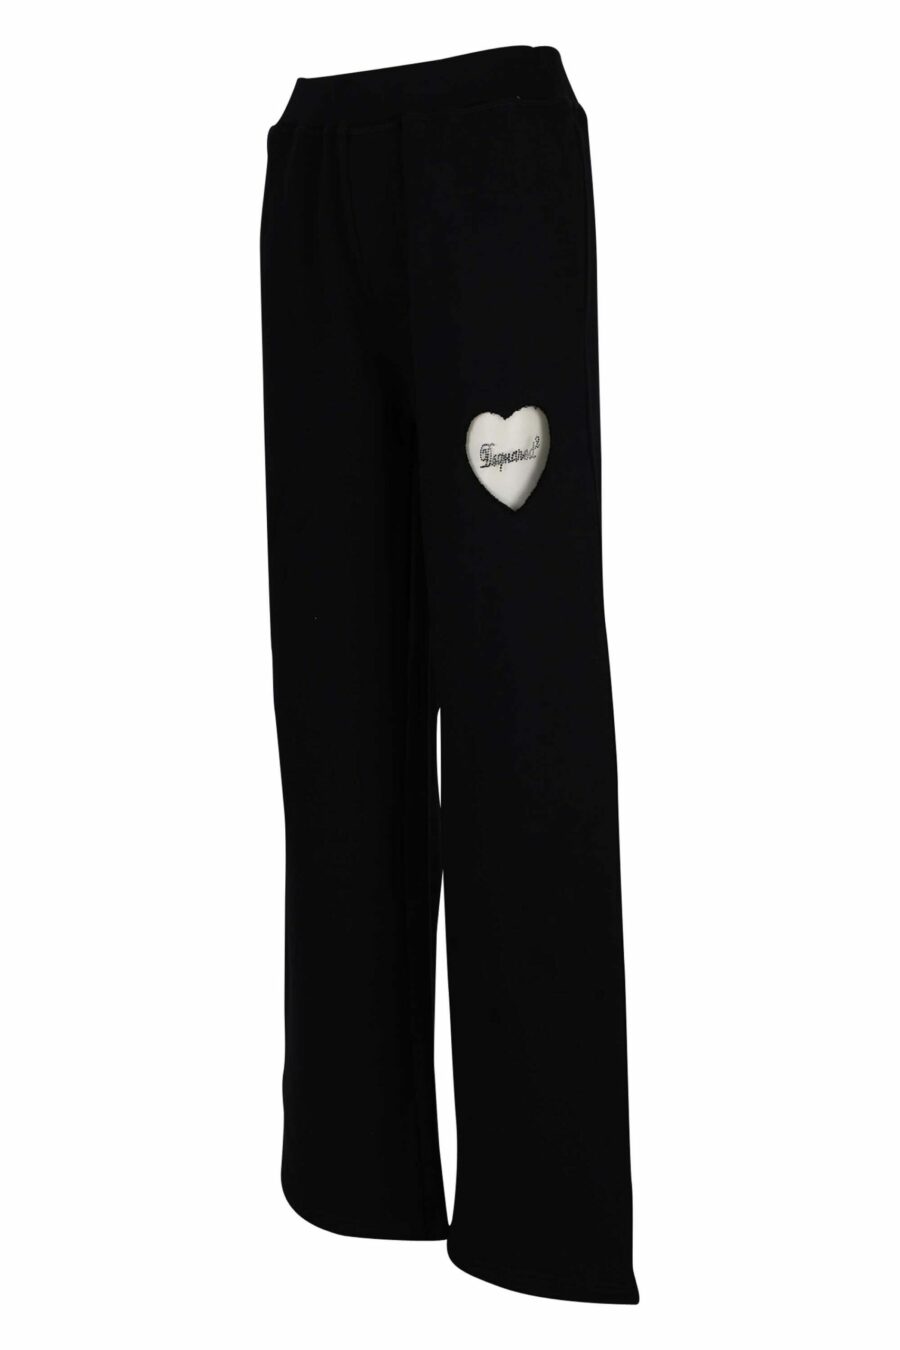 Pantalon noir avec logo en forme de cœur transparent - 8054148304249 1 échelle